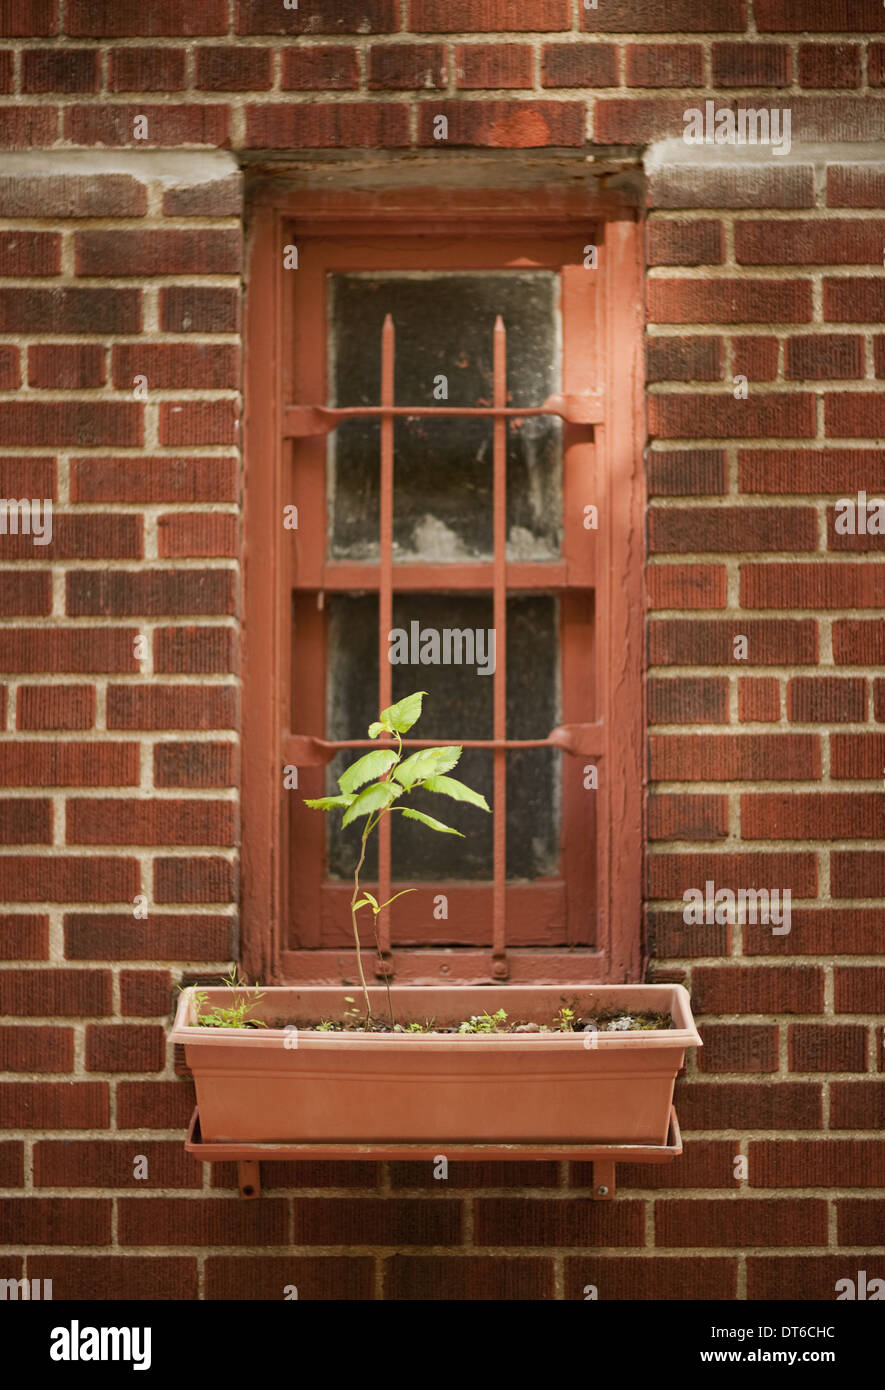 Le mur extérieur d'un immeuble de la ville de New York, une fenêtre étroite avec une seule plante dans un windowbox. Banque D'Images